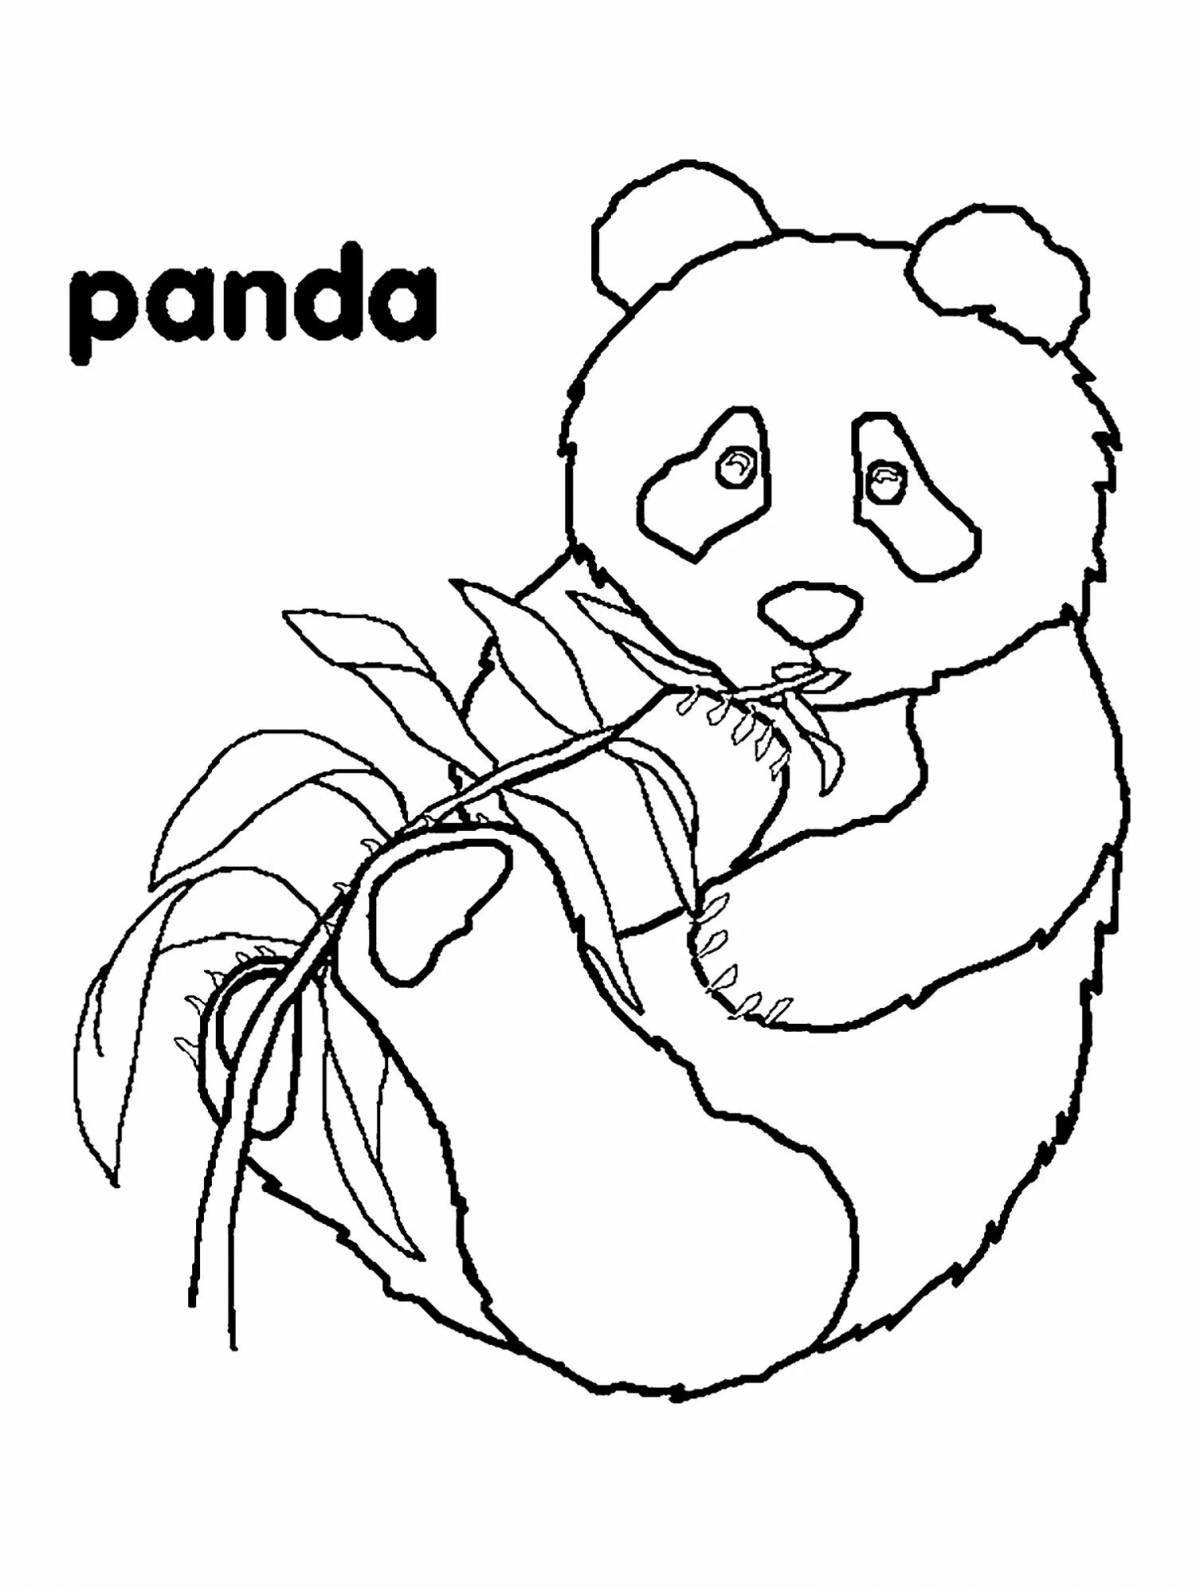 Игривый рисунок панды для детей